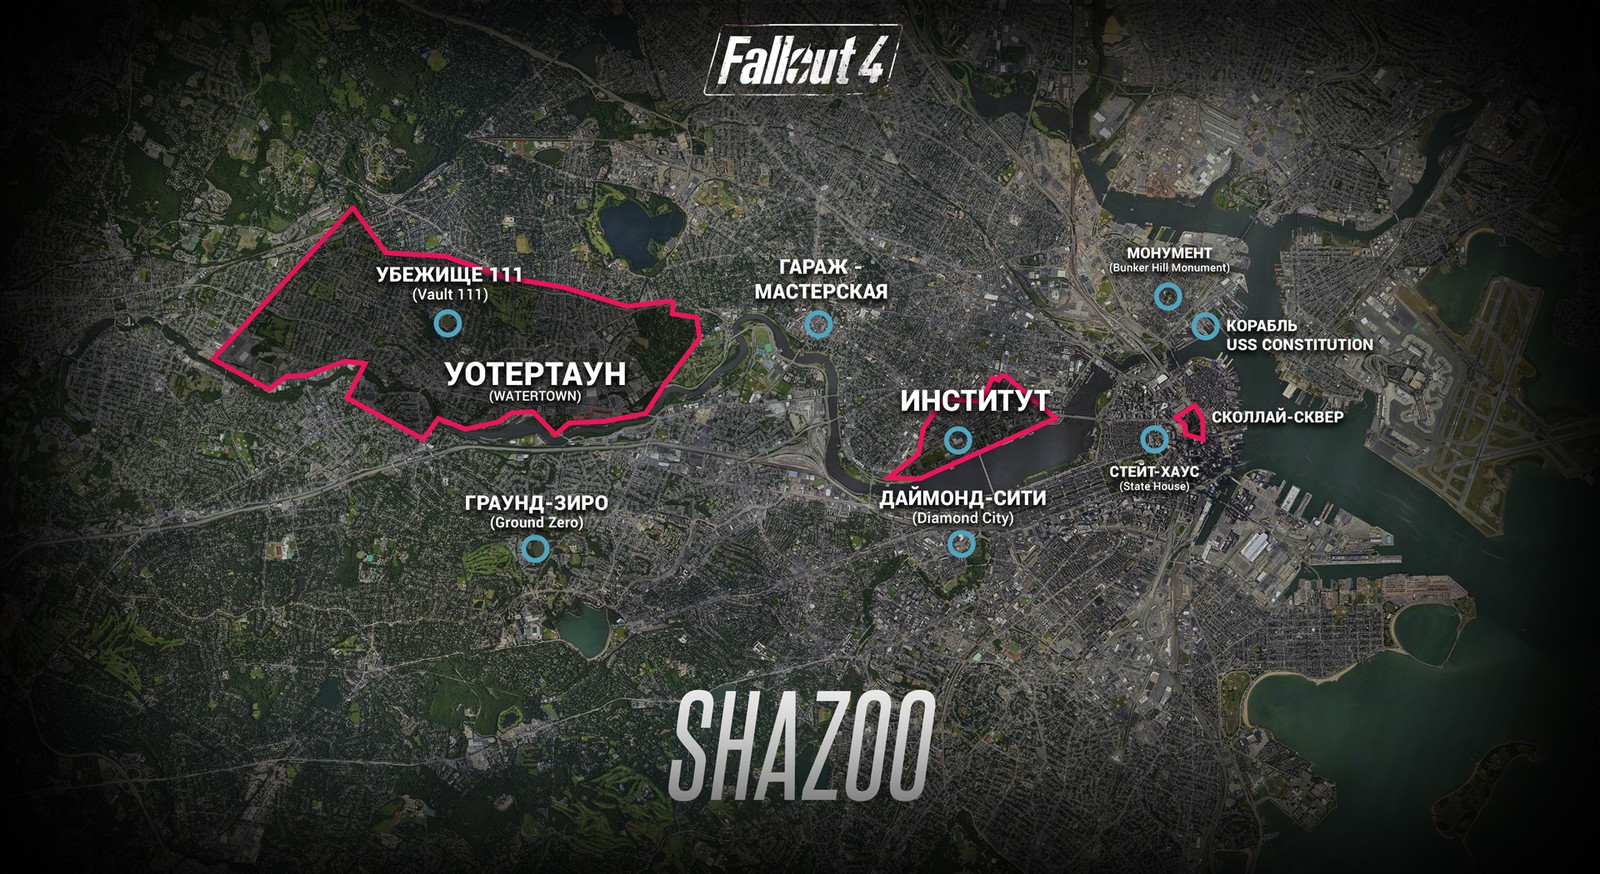 локации на карте fallout 4 фото 8